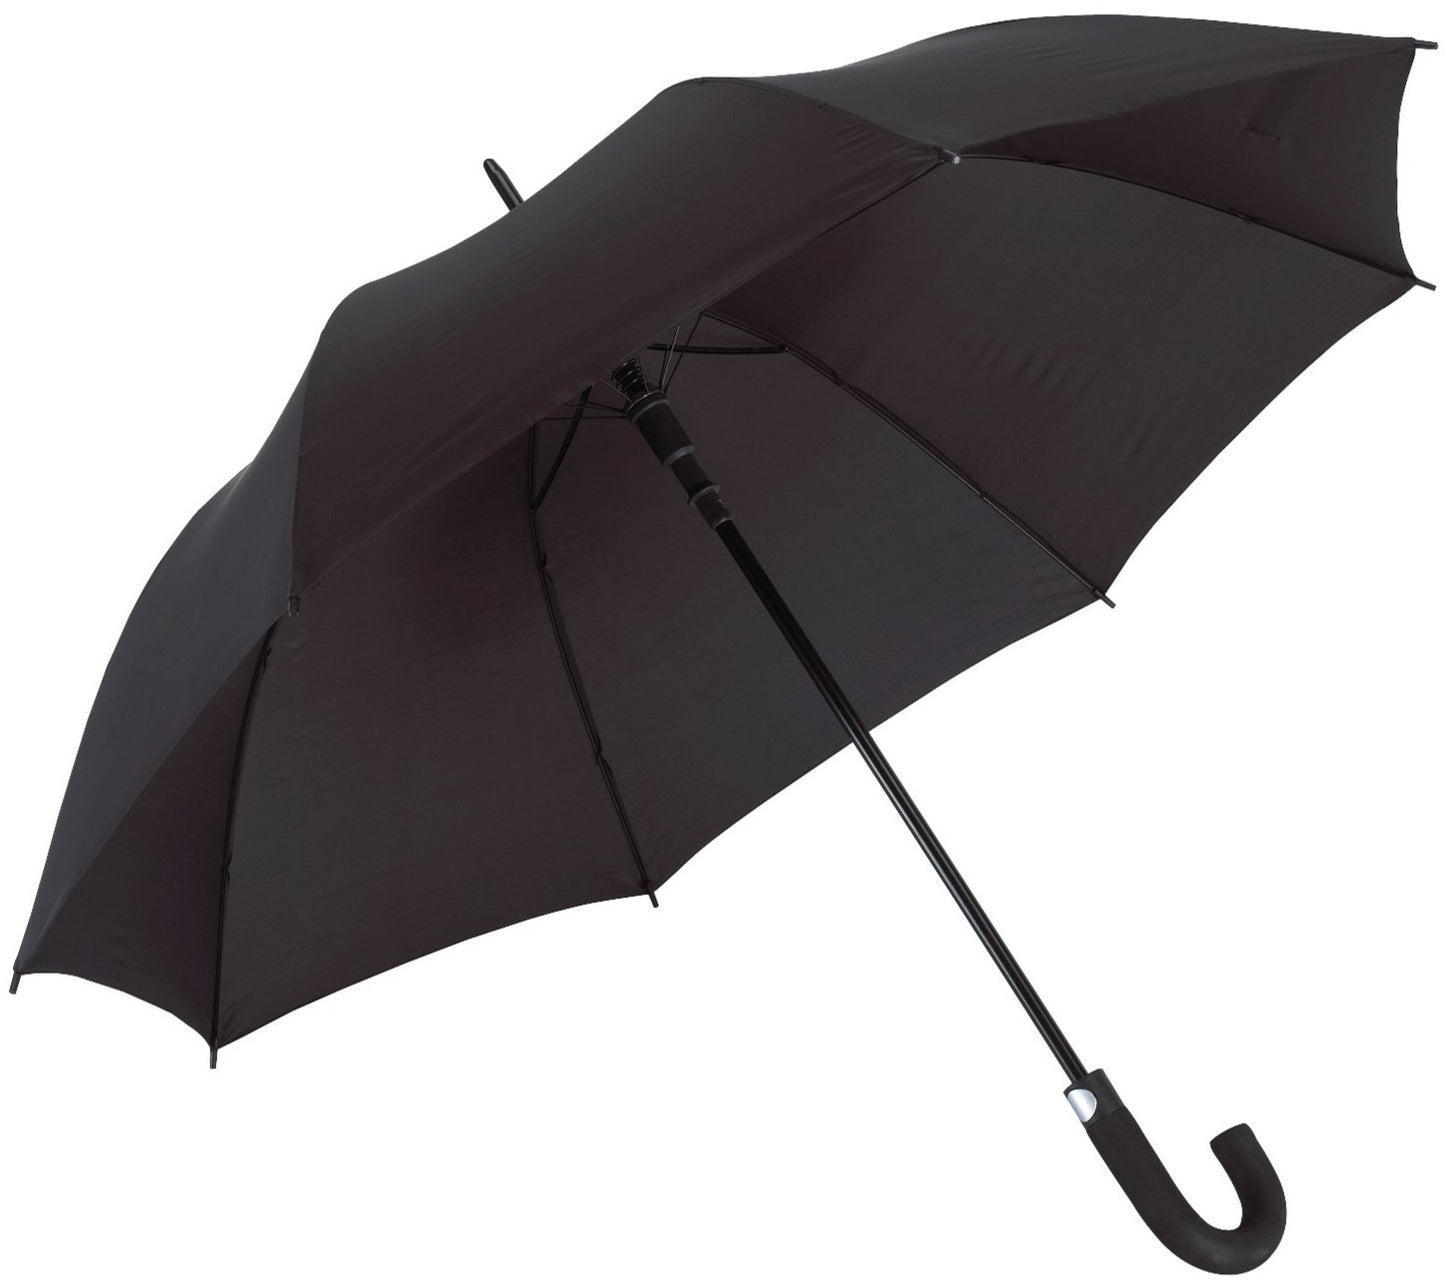 Μαύρη ομπρέλα βροχής, συνοδείας, αυτόματη, με κλασική κυρτή λαβή.